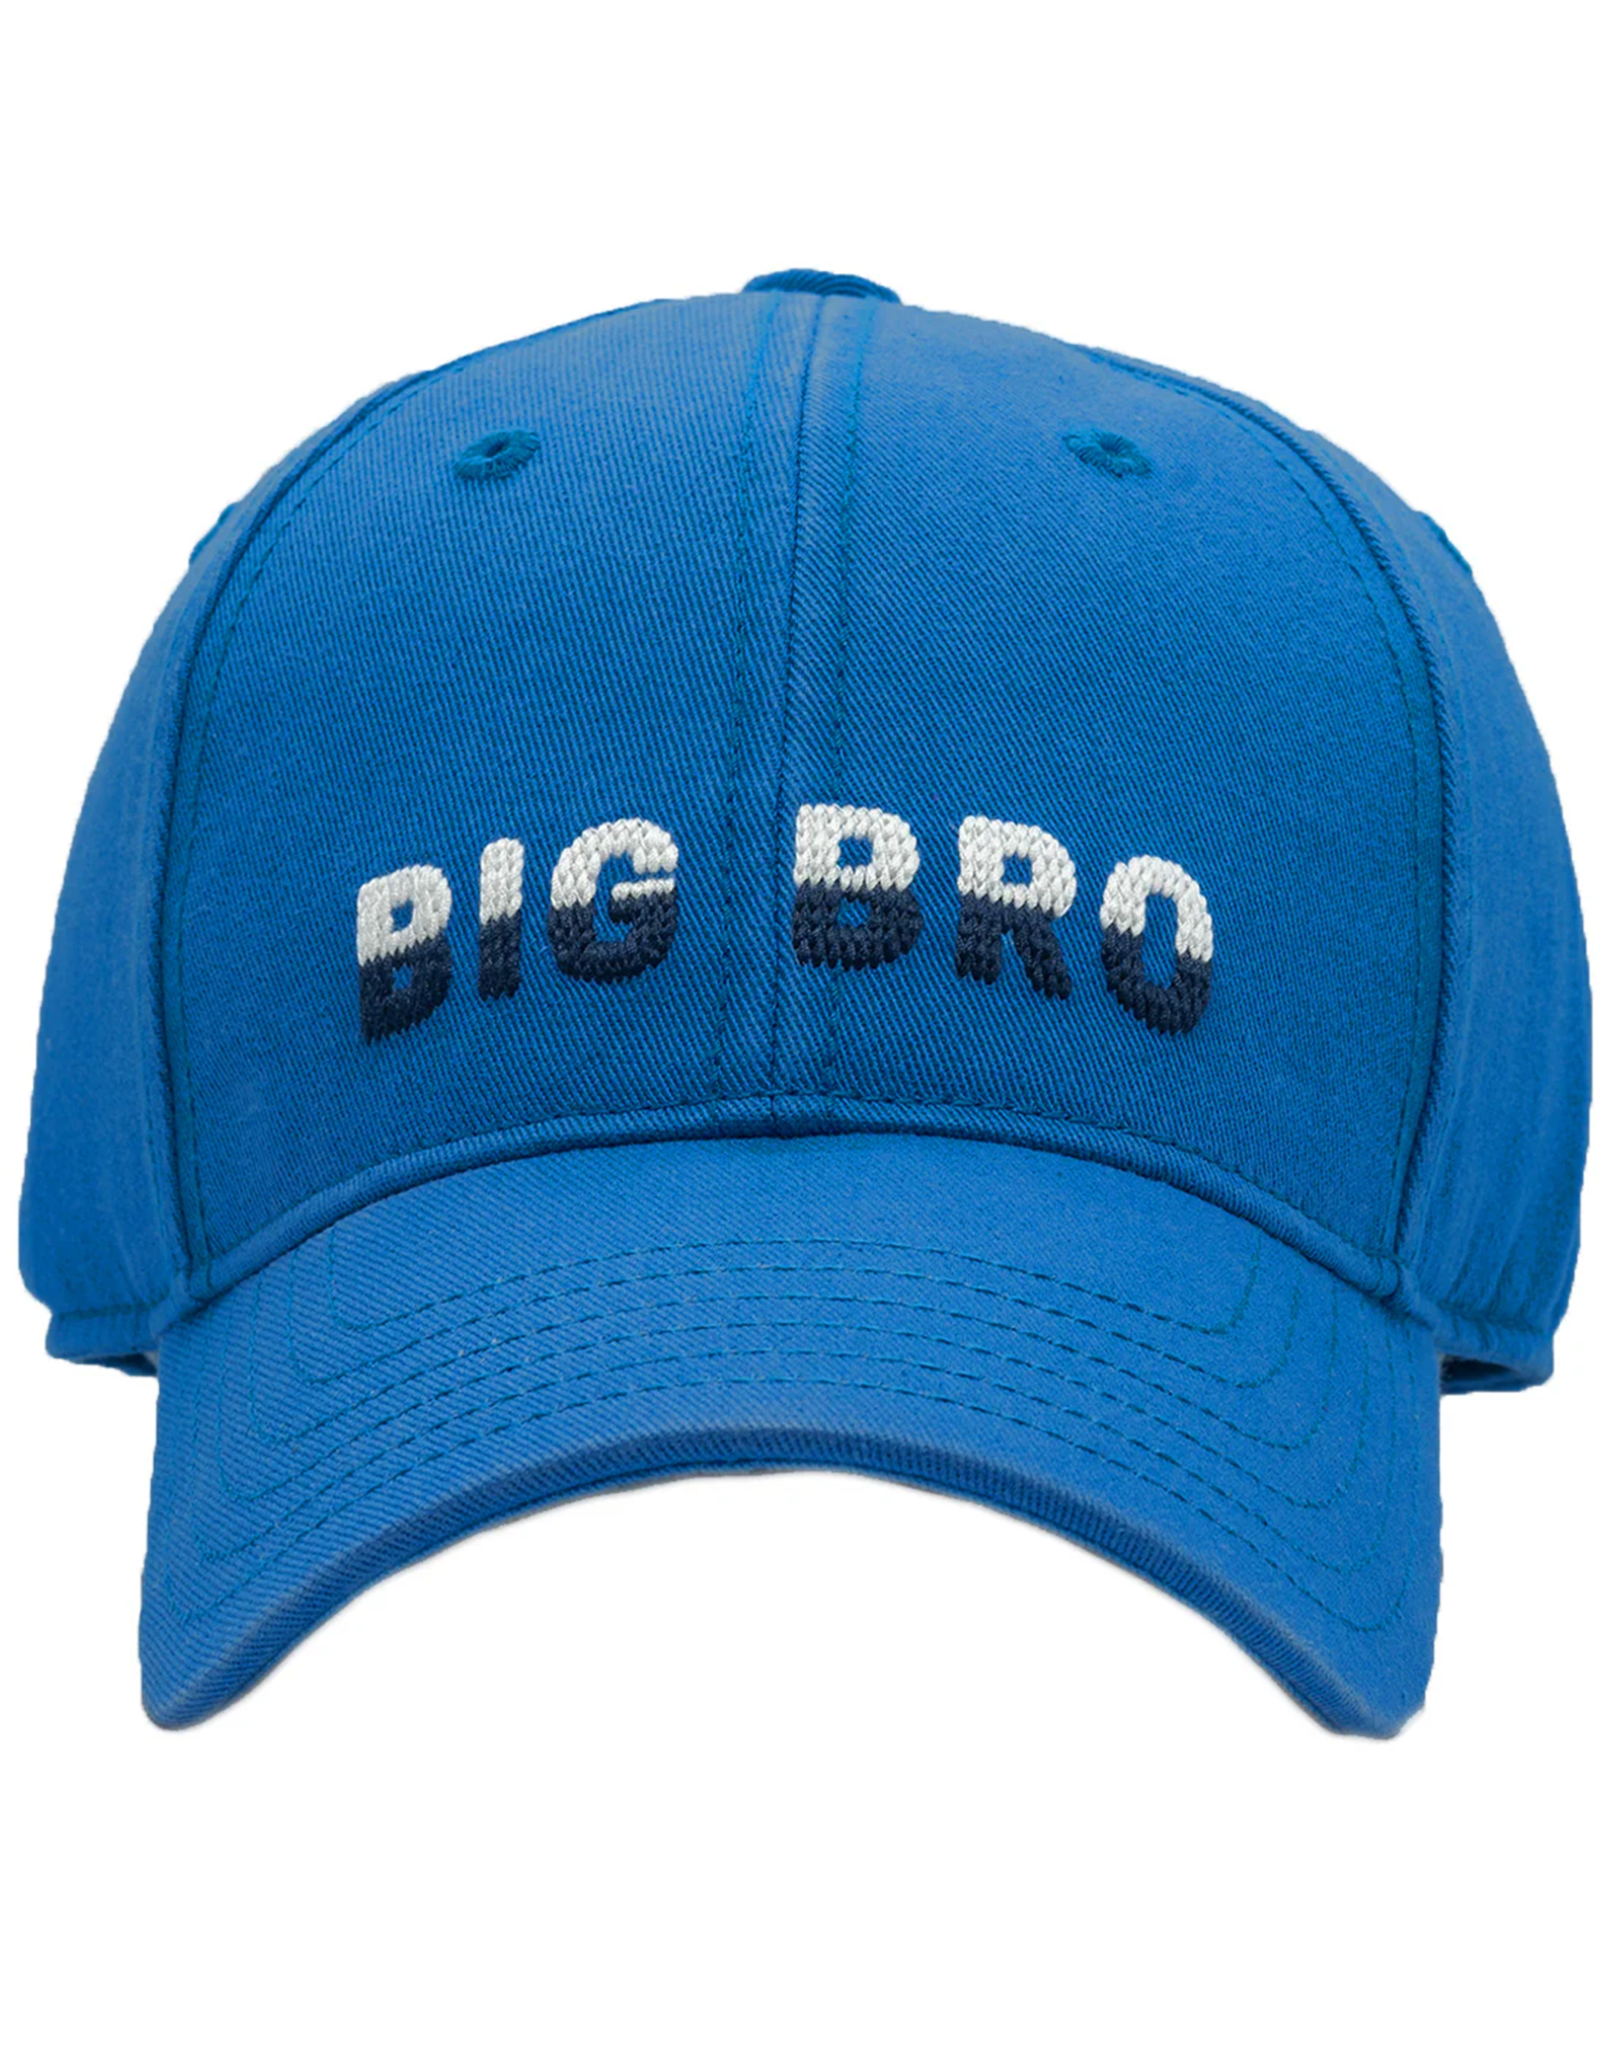 Harding Lane HL Embroidered Hat Lt. Blue Big Bro